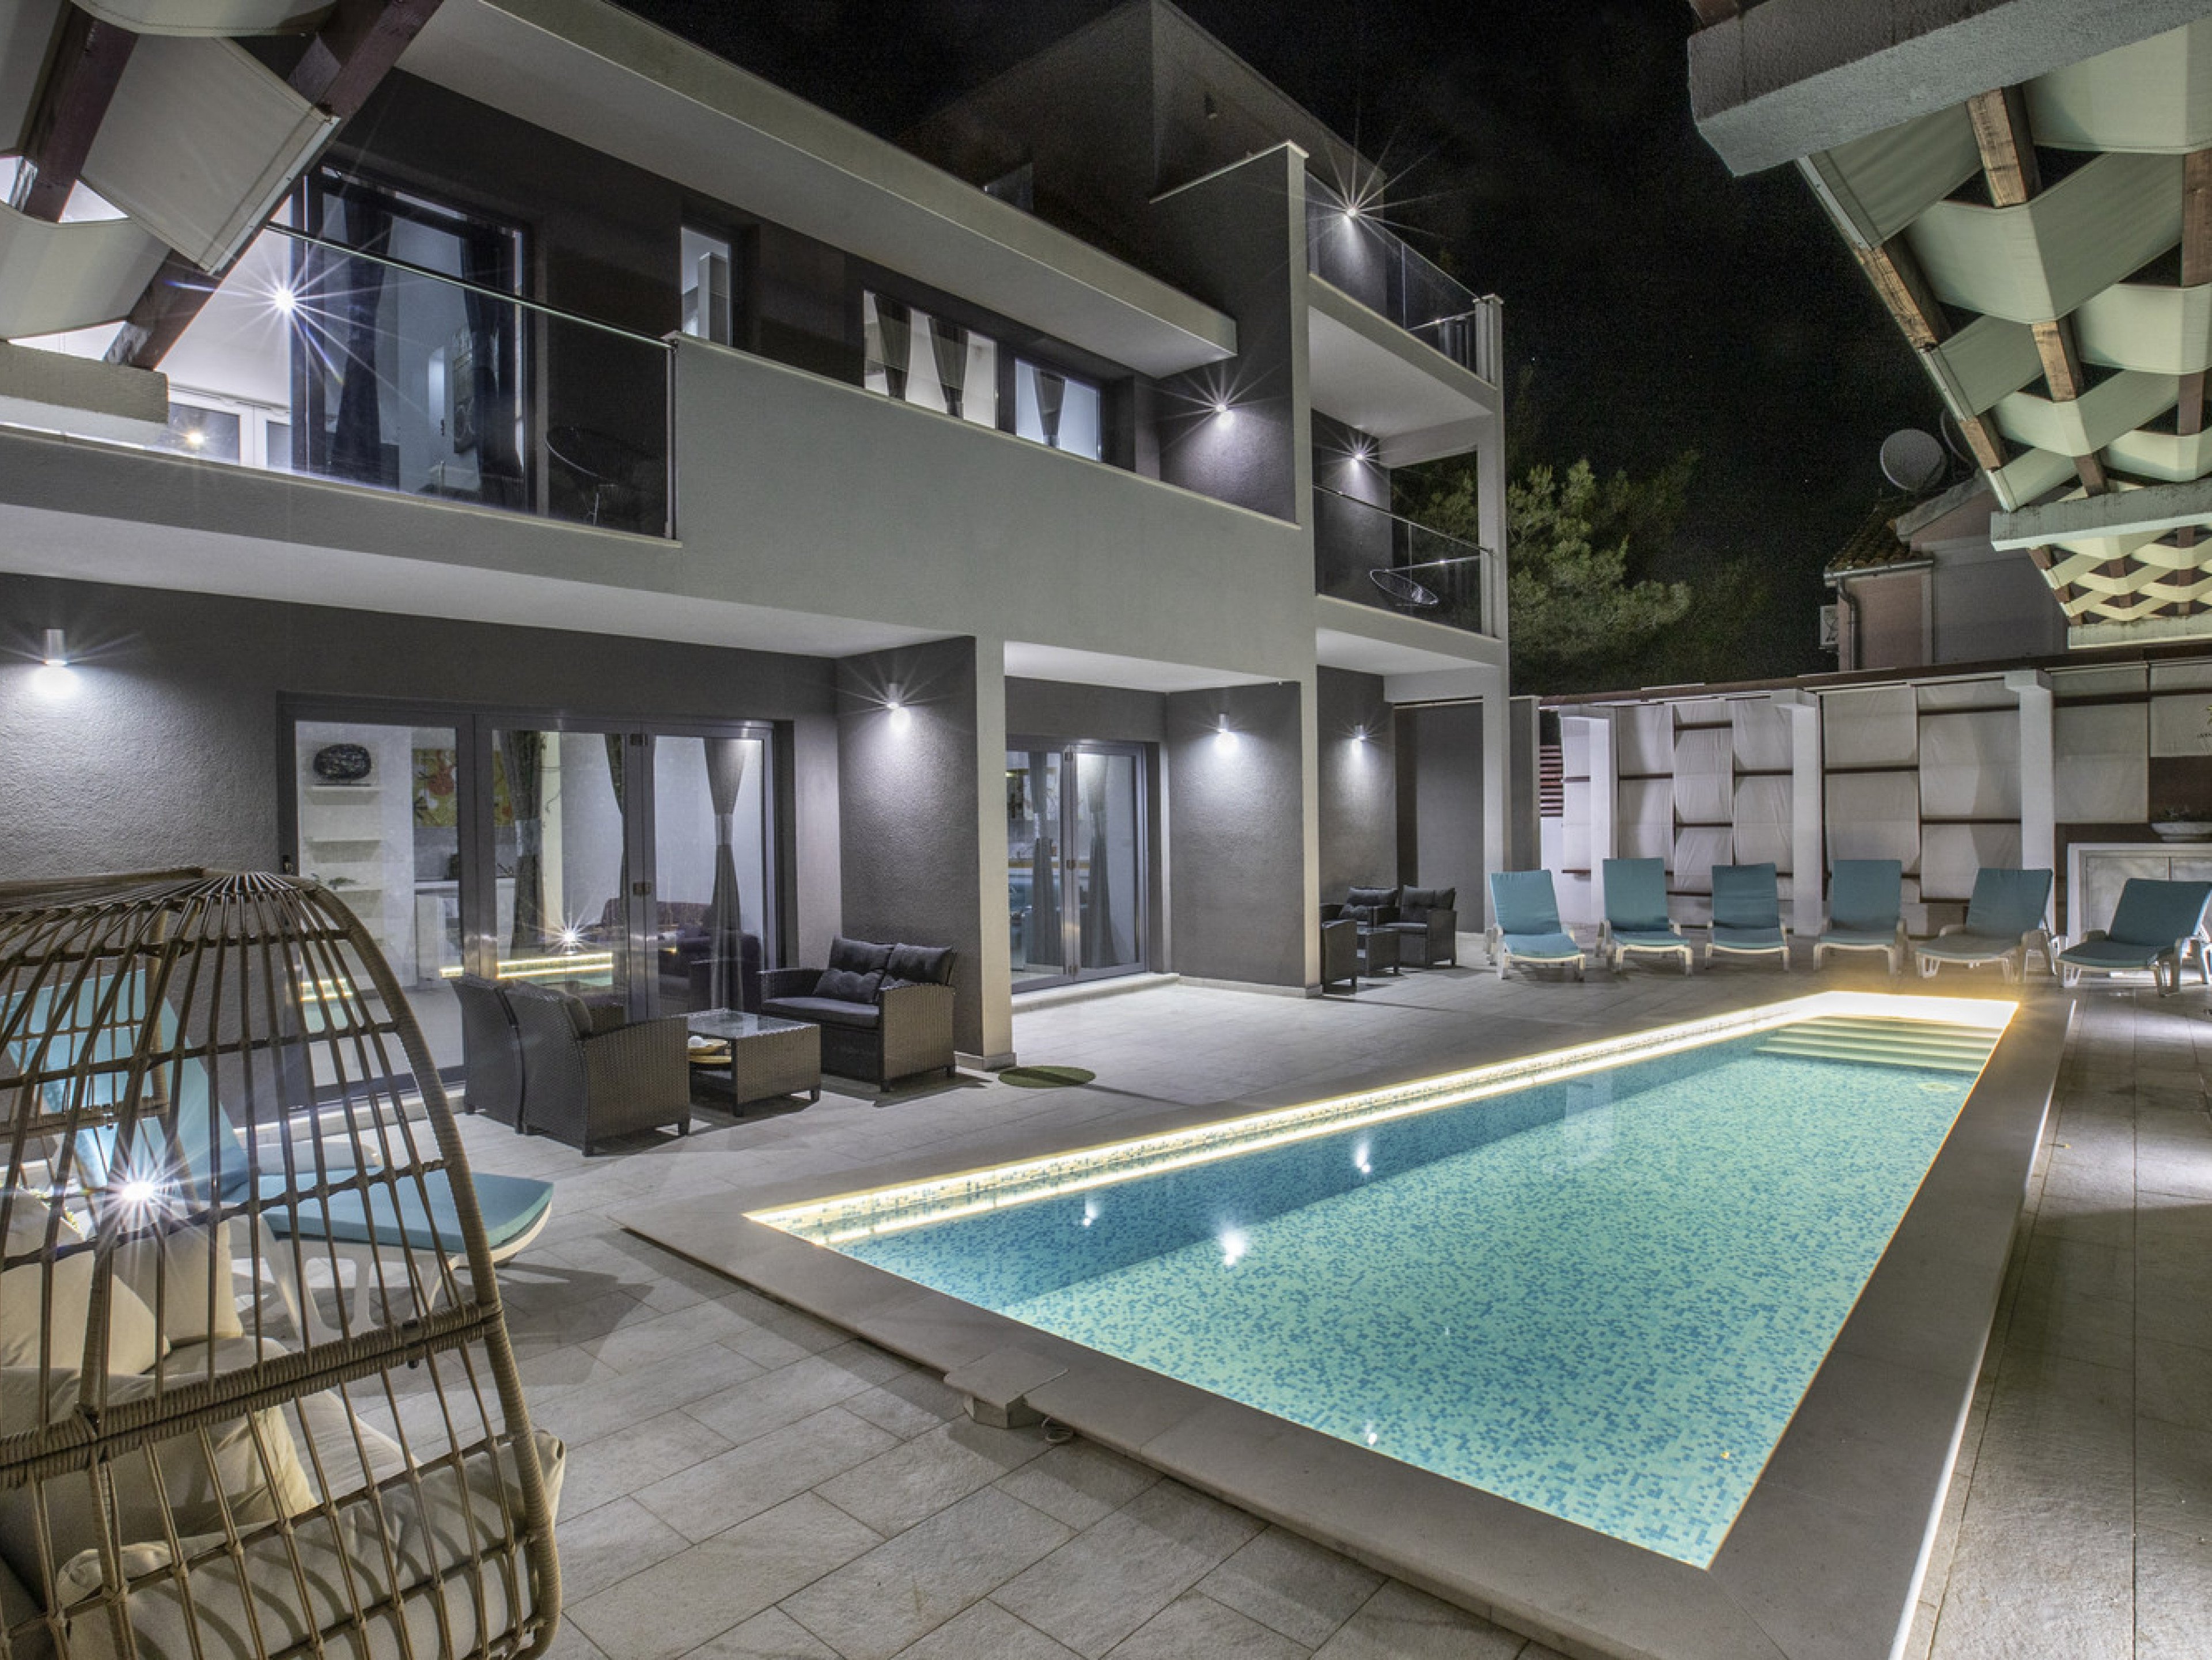 Villa Martinis private villas in Croatia with pools